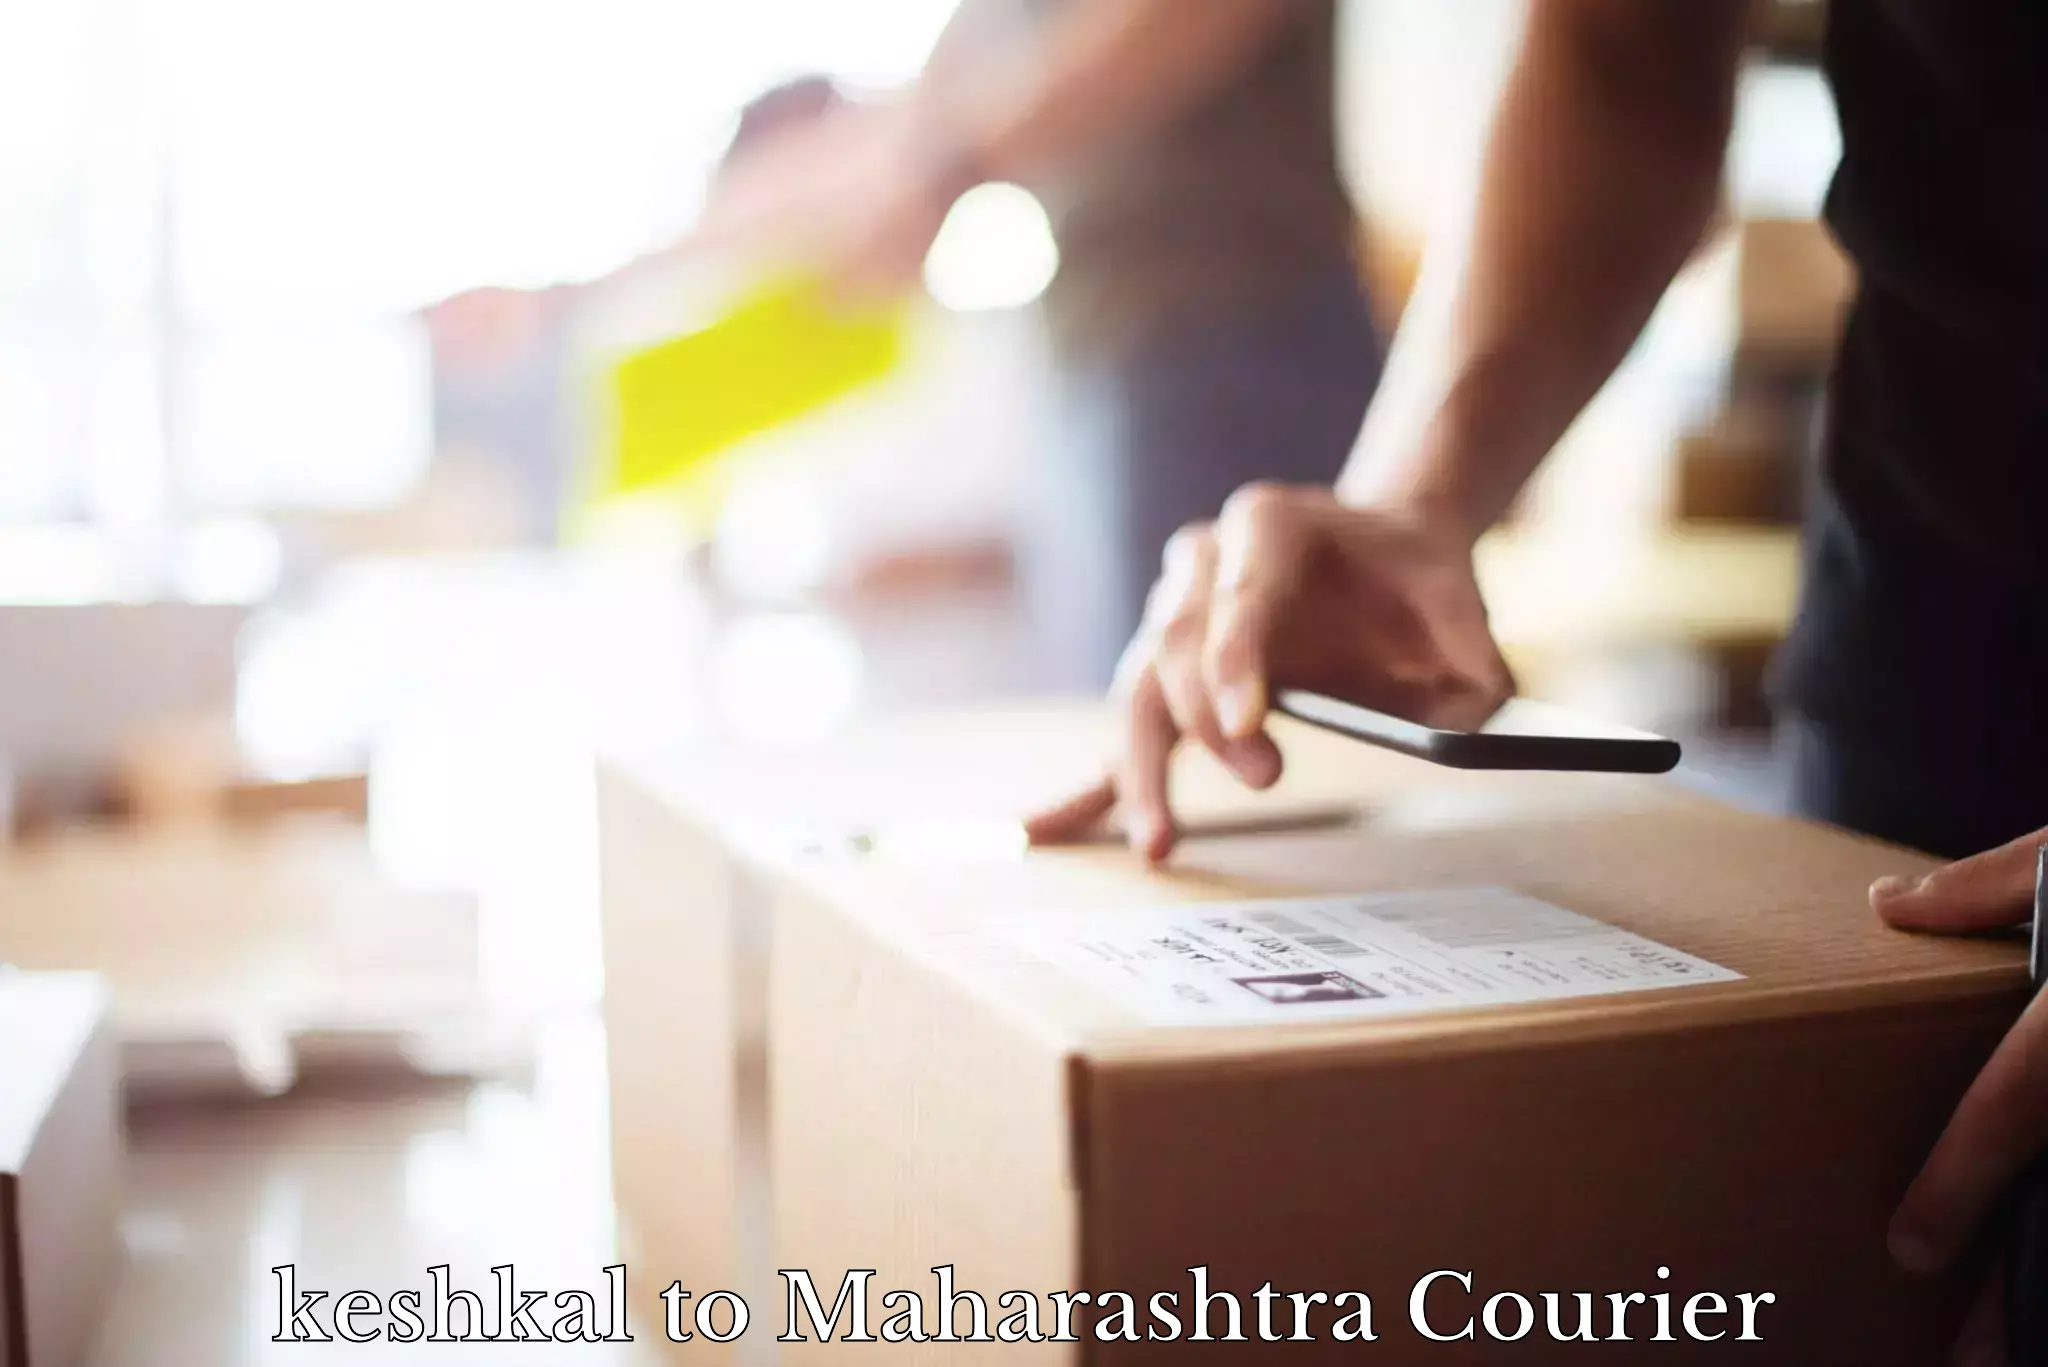 24/7 courier service keshkal to Maharashtra